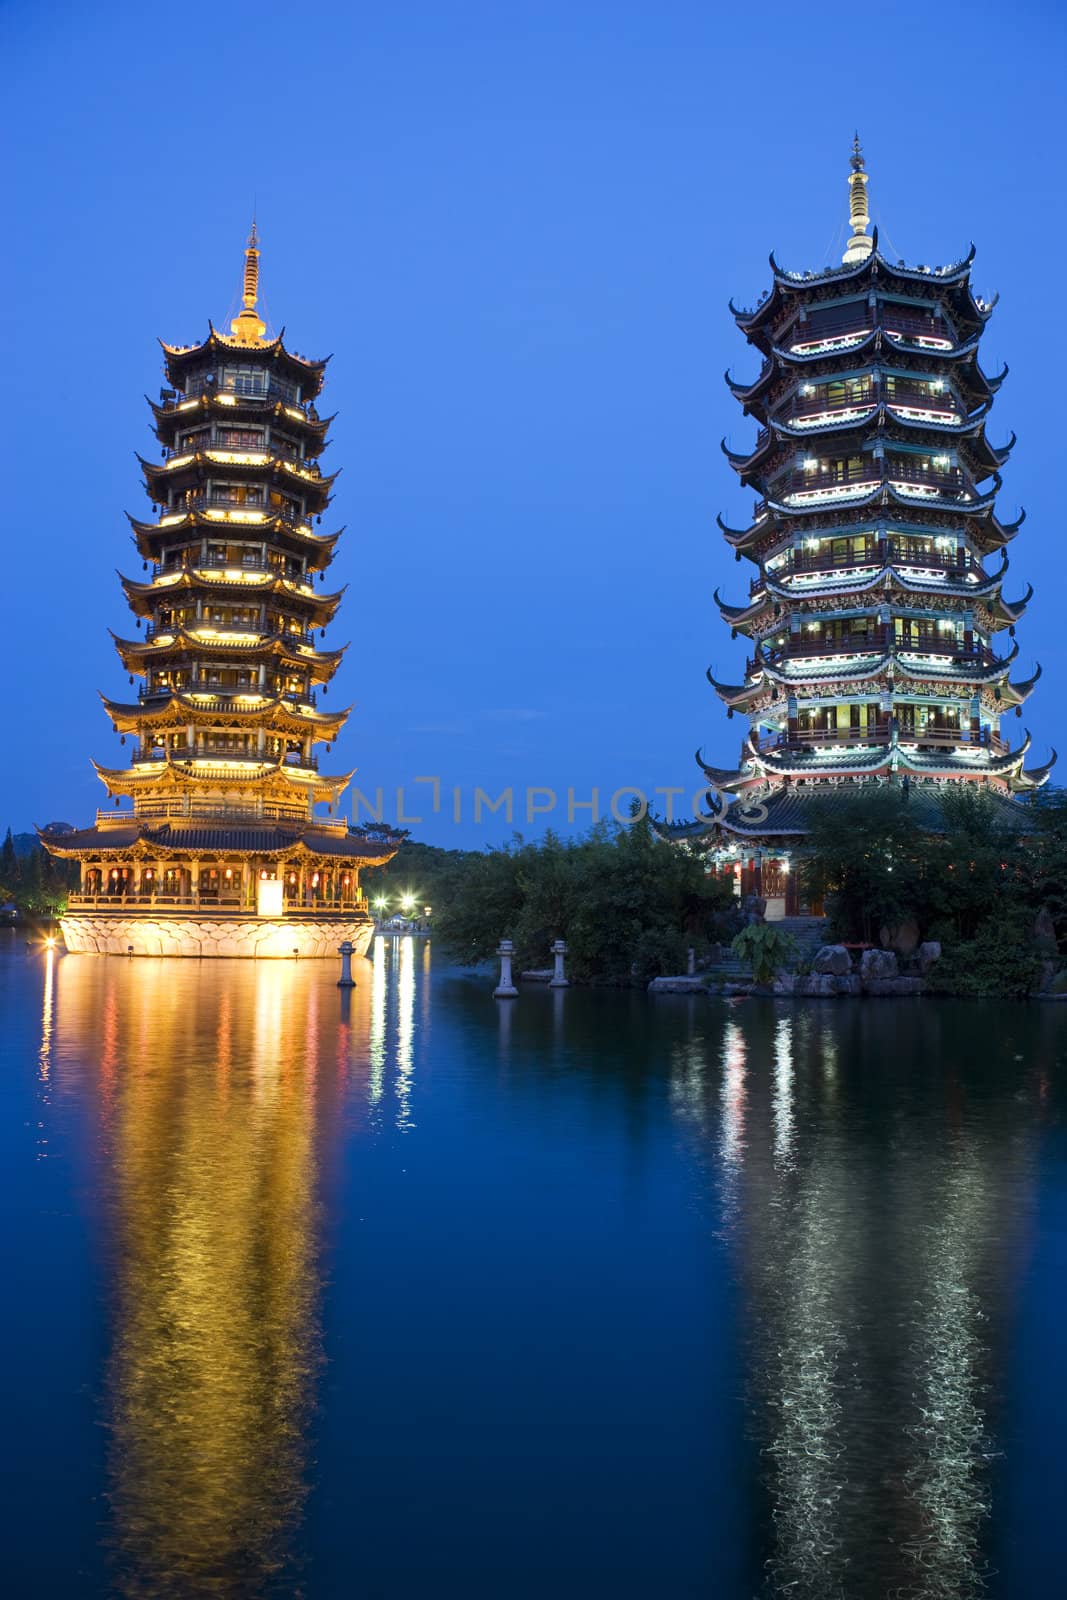 Sun and Moon Pagodas, Guilin, China by shariffc